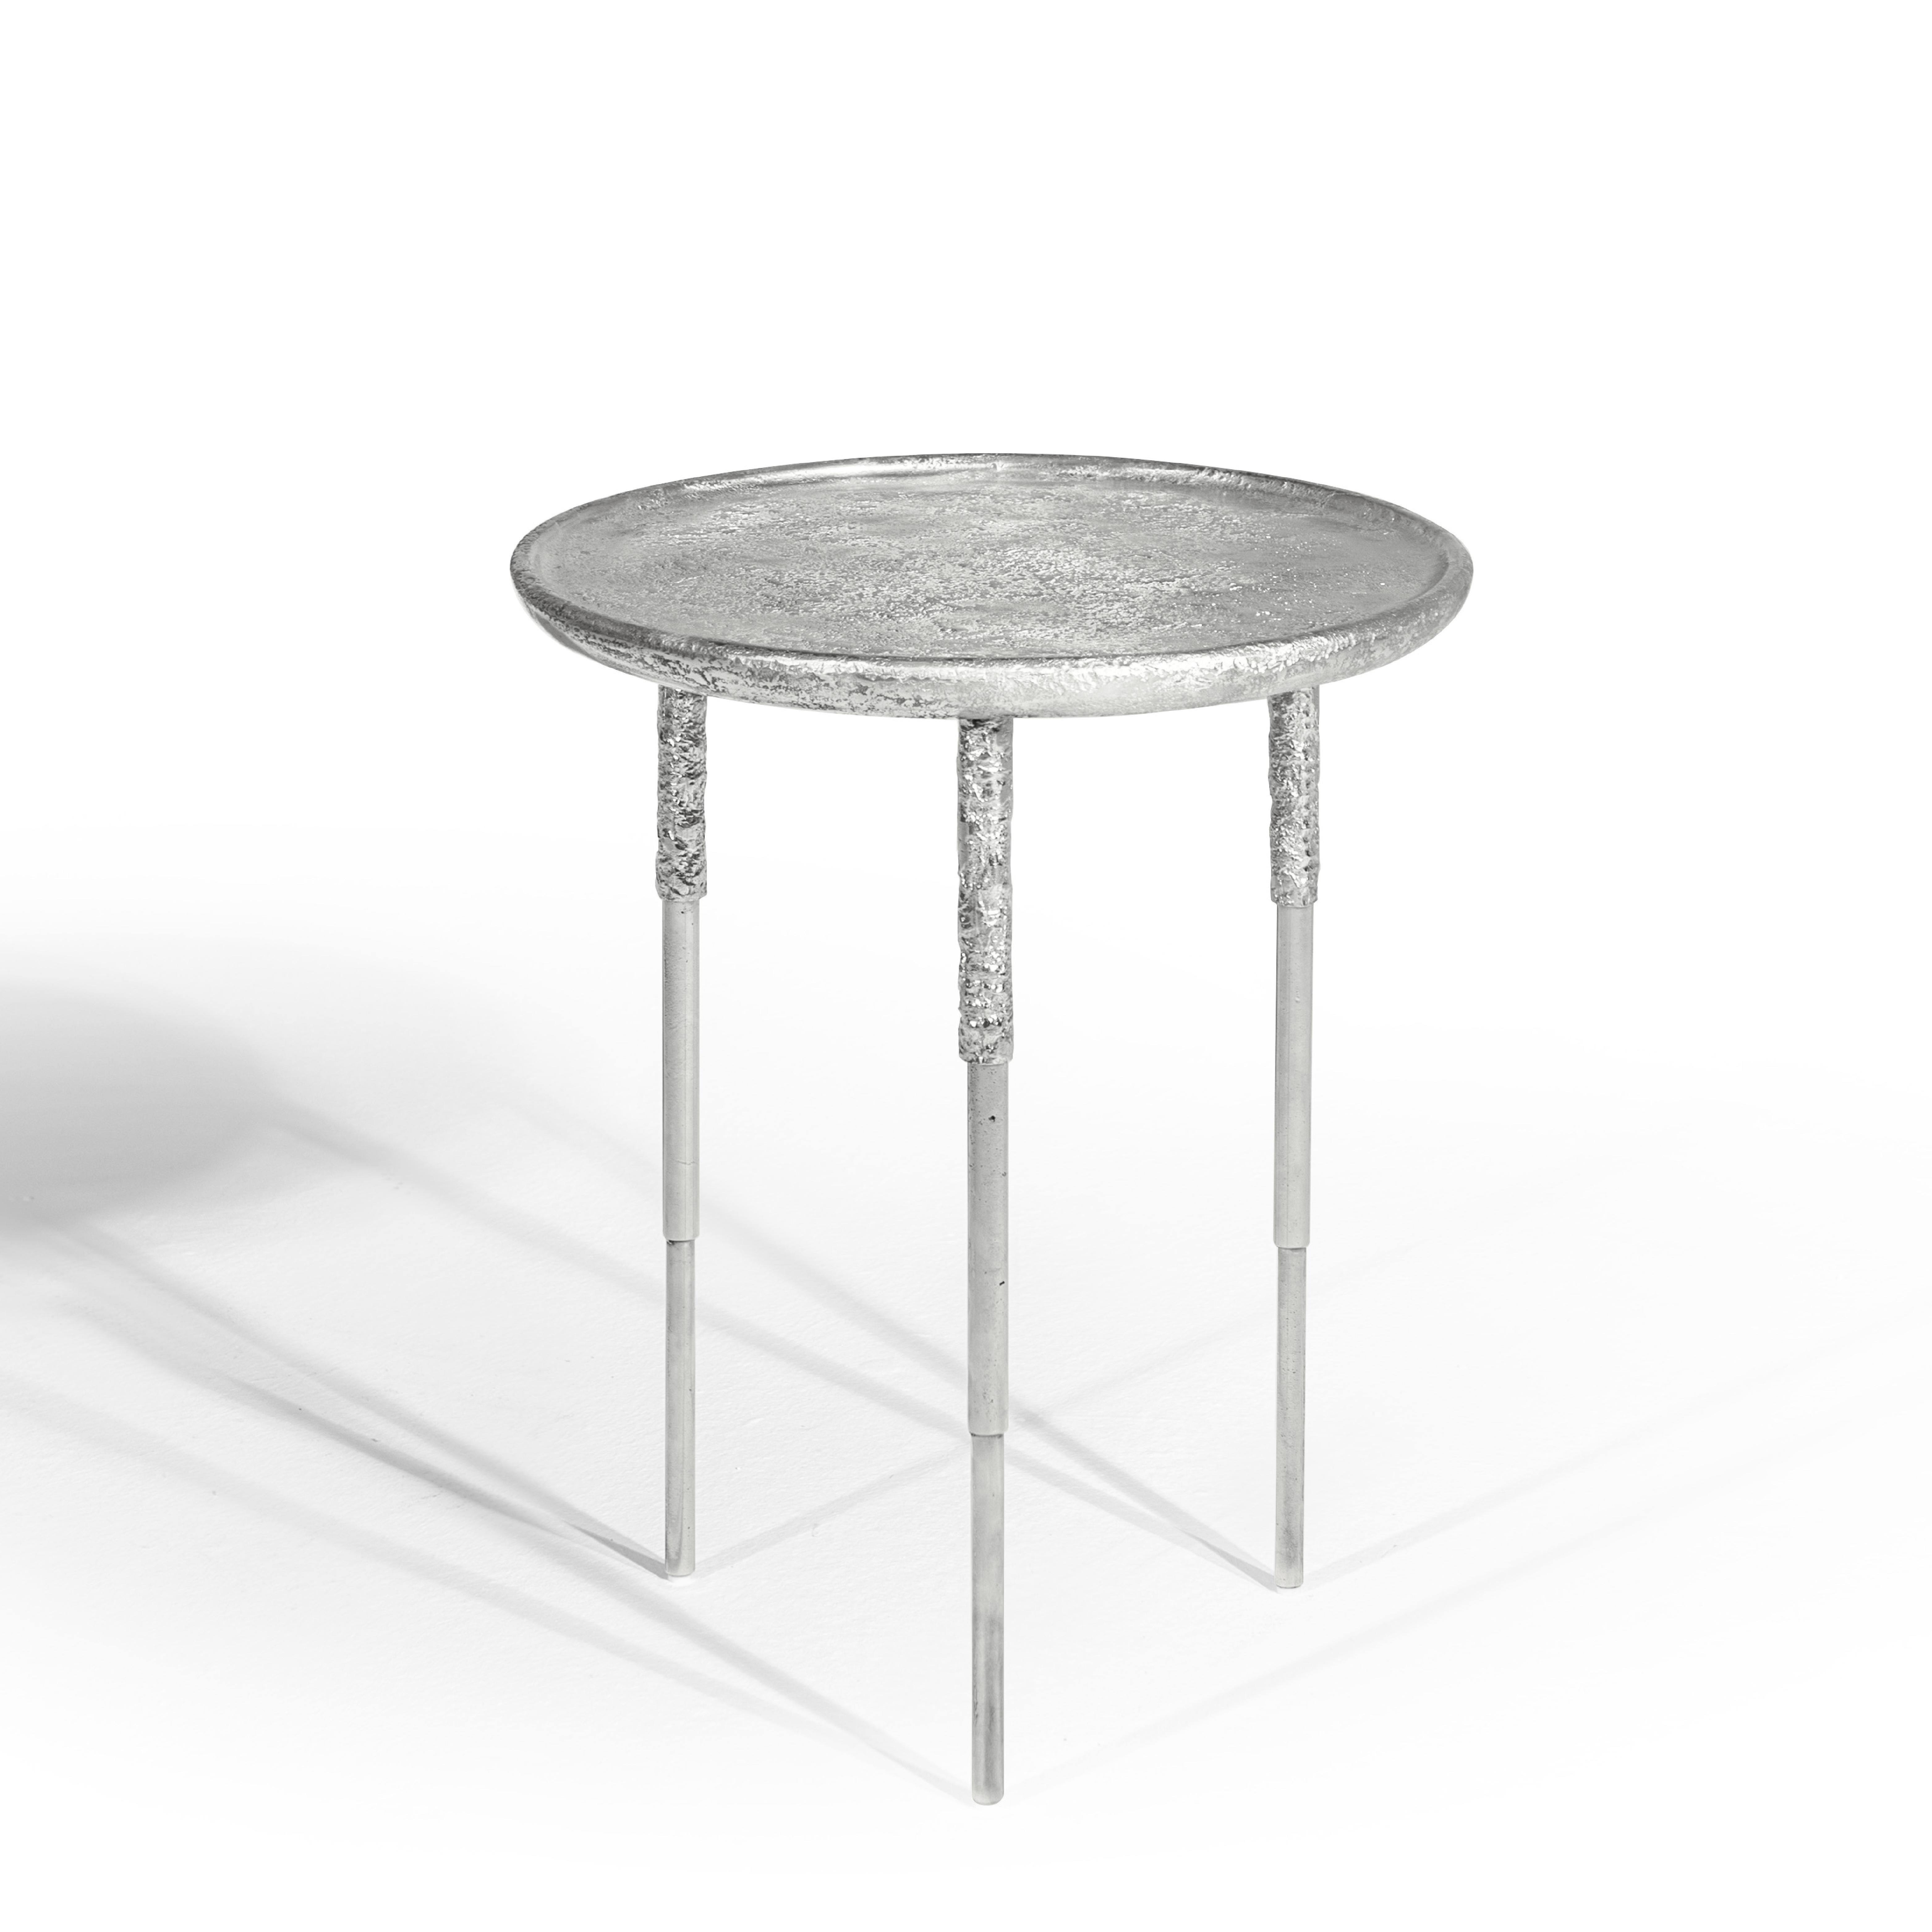 Table d'appoint contemporaine par HESSENTIA, fonte d'aluminium avec texture sculpturale